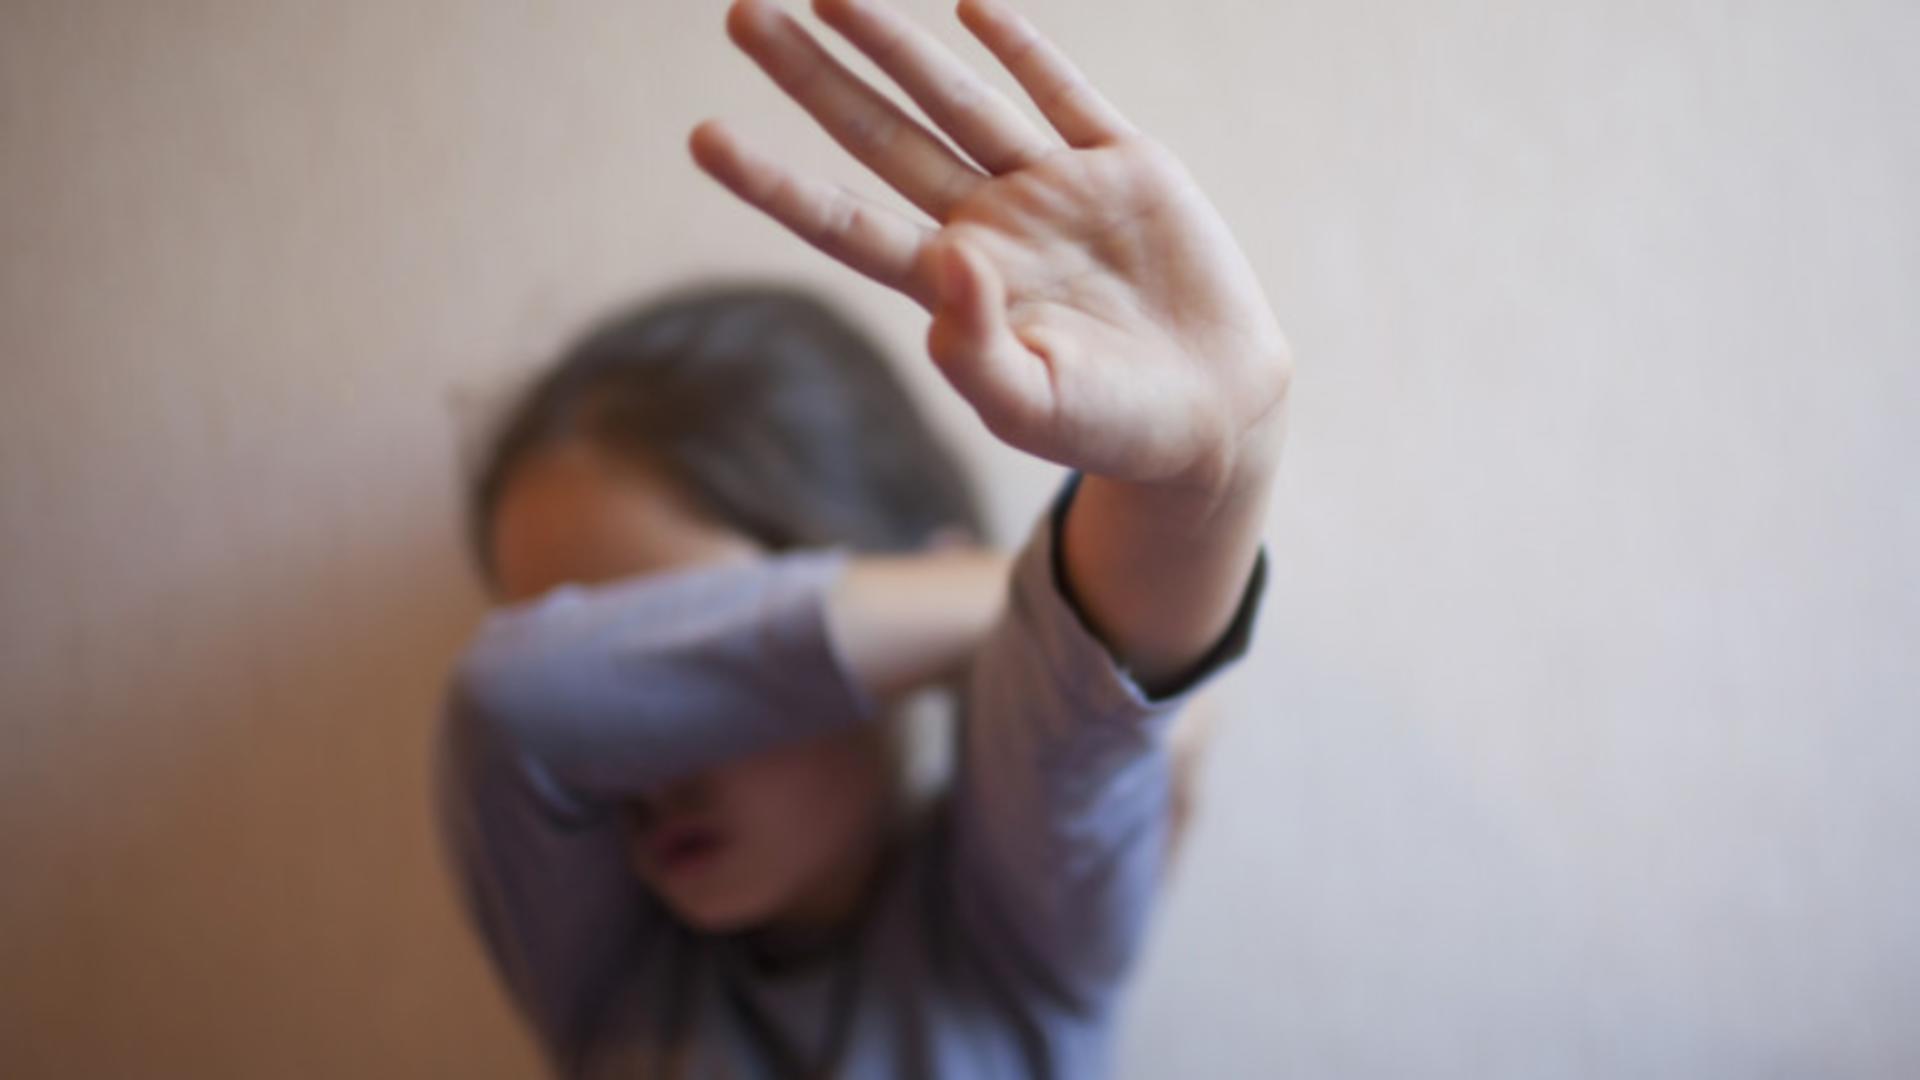 Fetiță de 9 ani, VIOLATĂ în toaleta școlii - Au fost sesizate DGASPC și Inspectoratul Școlar